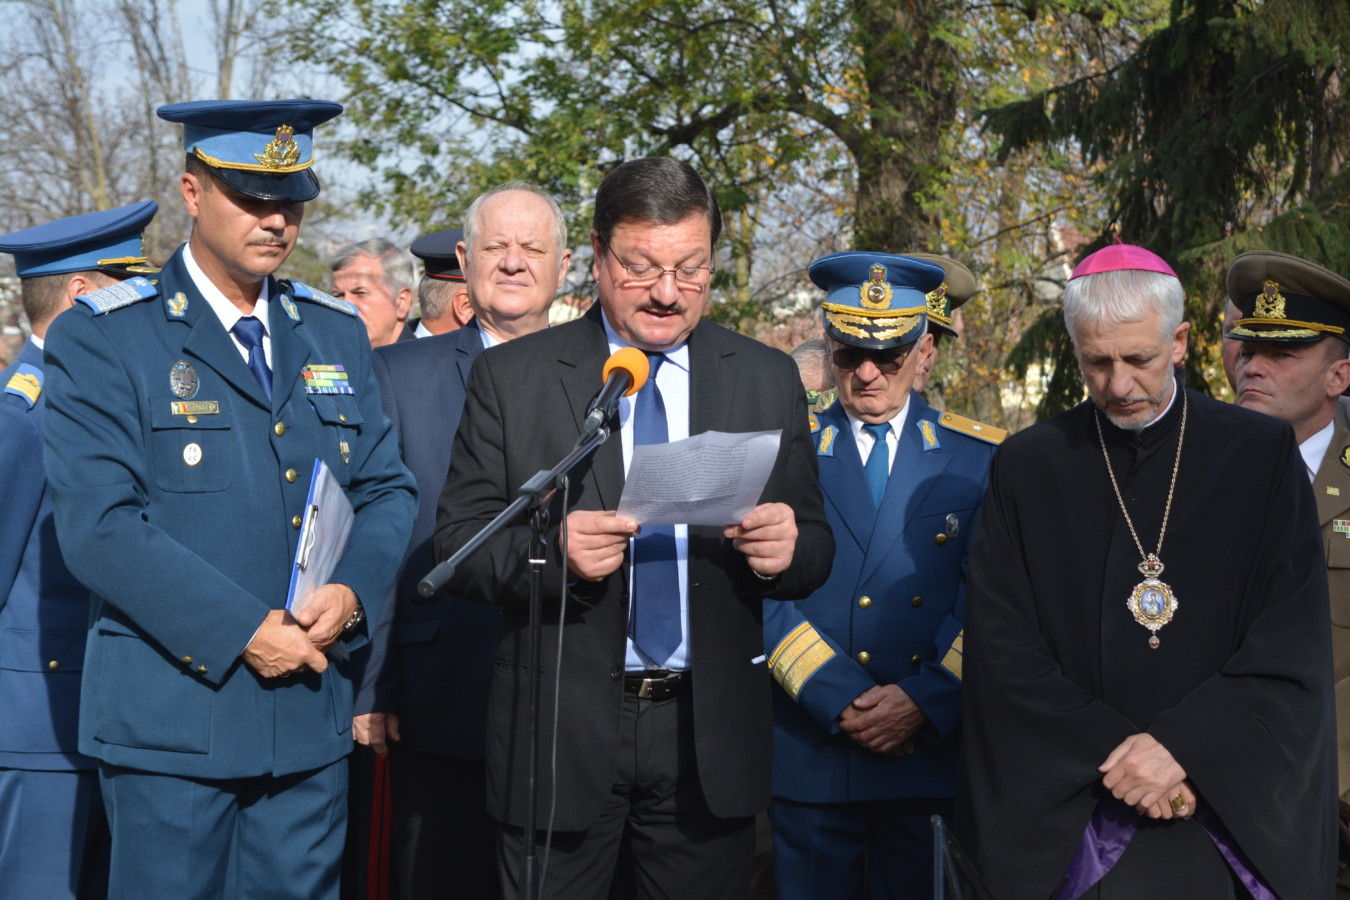 Aviatoarea Smaranda Brăescu, luptătoare neînfricată împotriva comunismului, comemorată la 70 de la trecerea la Domnul